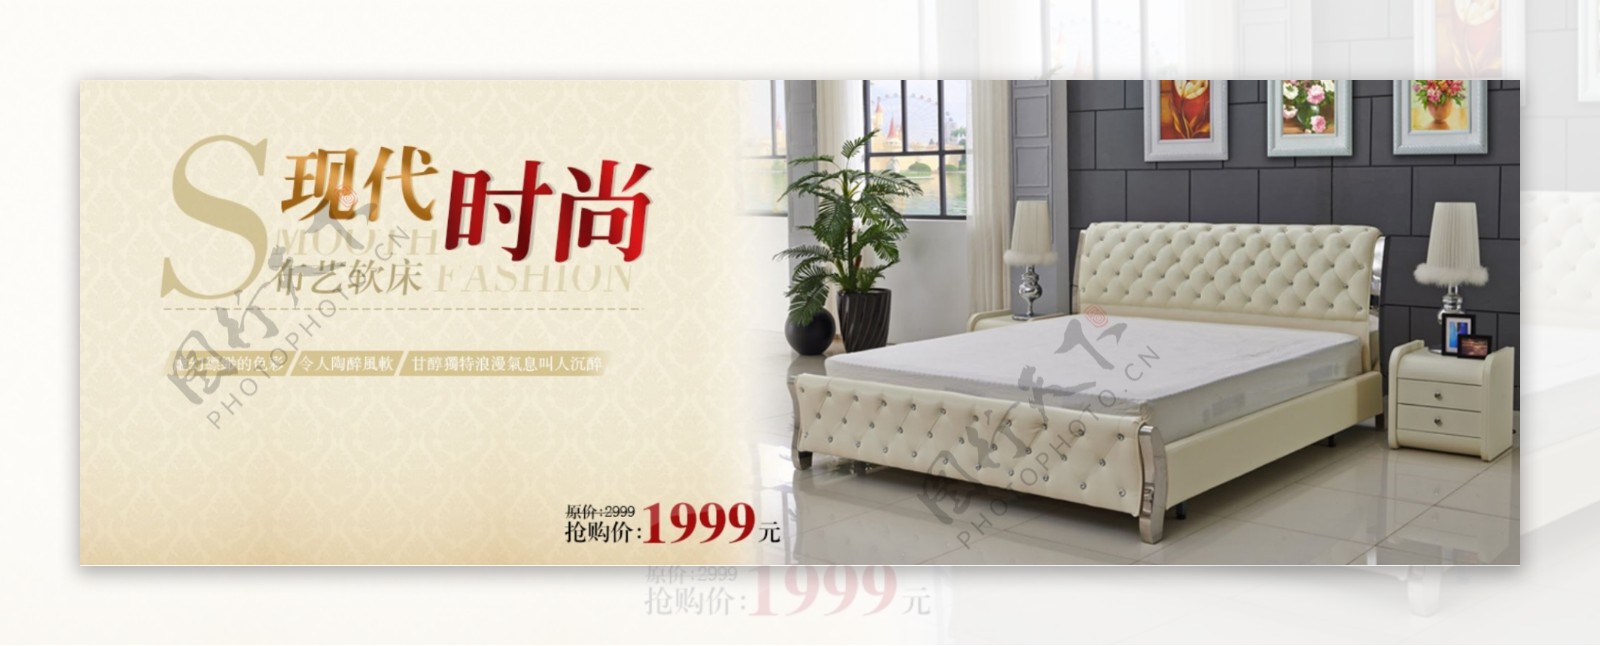 高贵沙发海报简约时尚现代家具风格